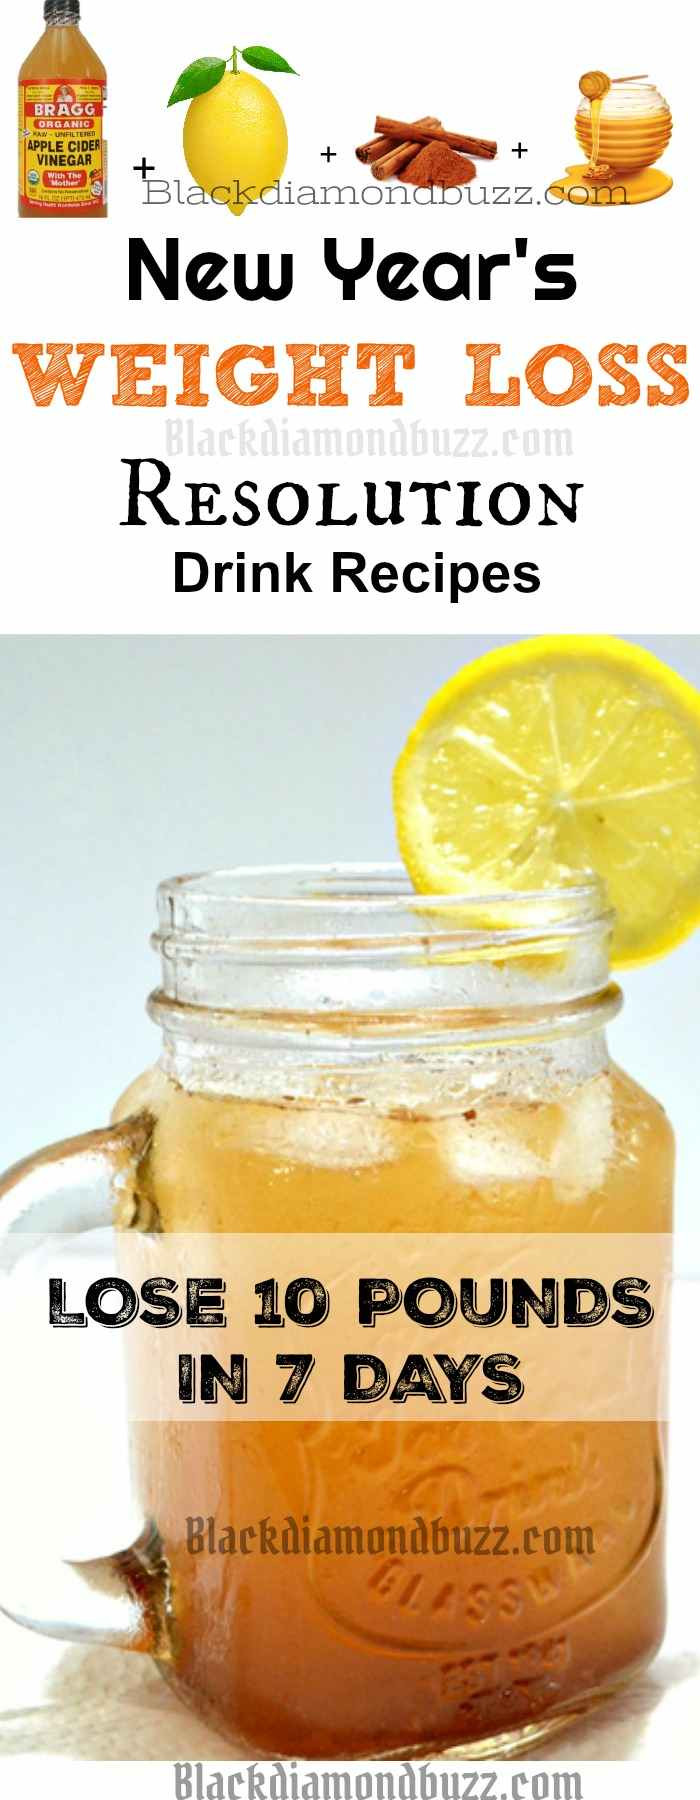 Detox Drinks Recipes For Weight Loss
 DIY Apple Cider Vinegar Detox Drink Recipe for Fat Burning